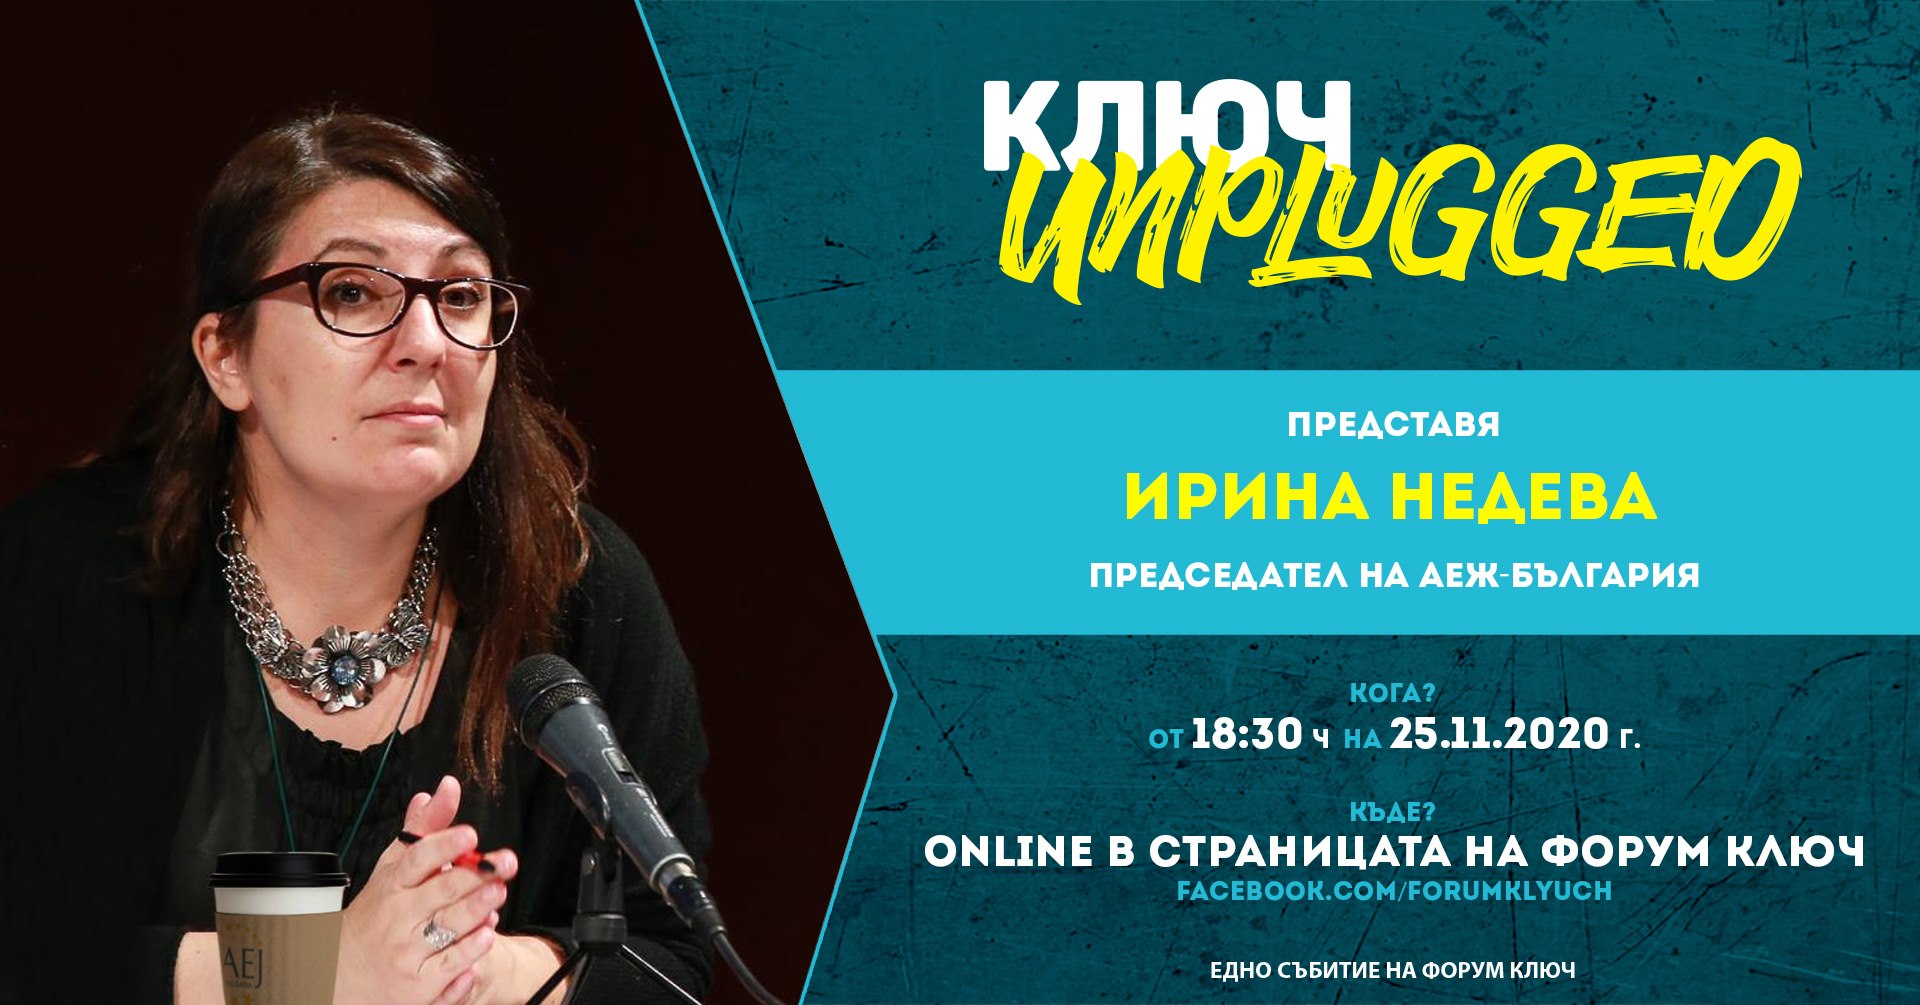 КЛЮЧ Unplugged представя председателя на АЕЖ - Ирина Недева